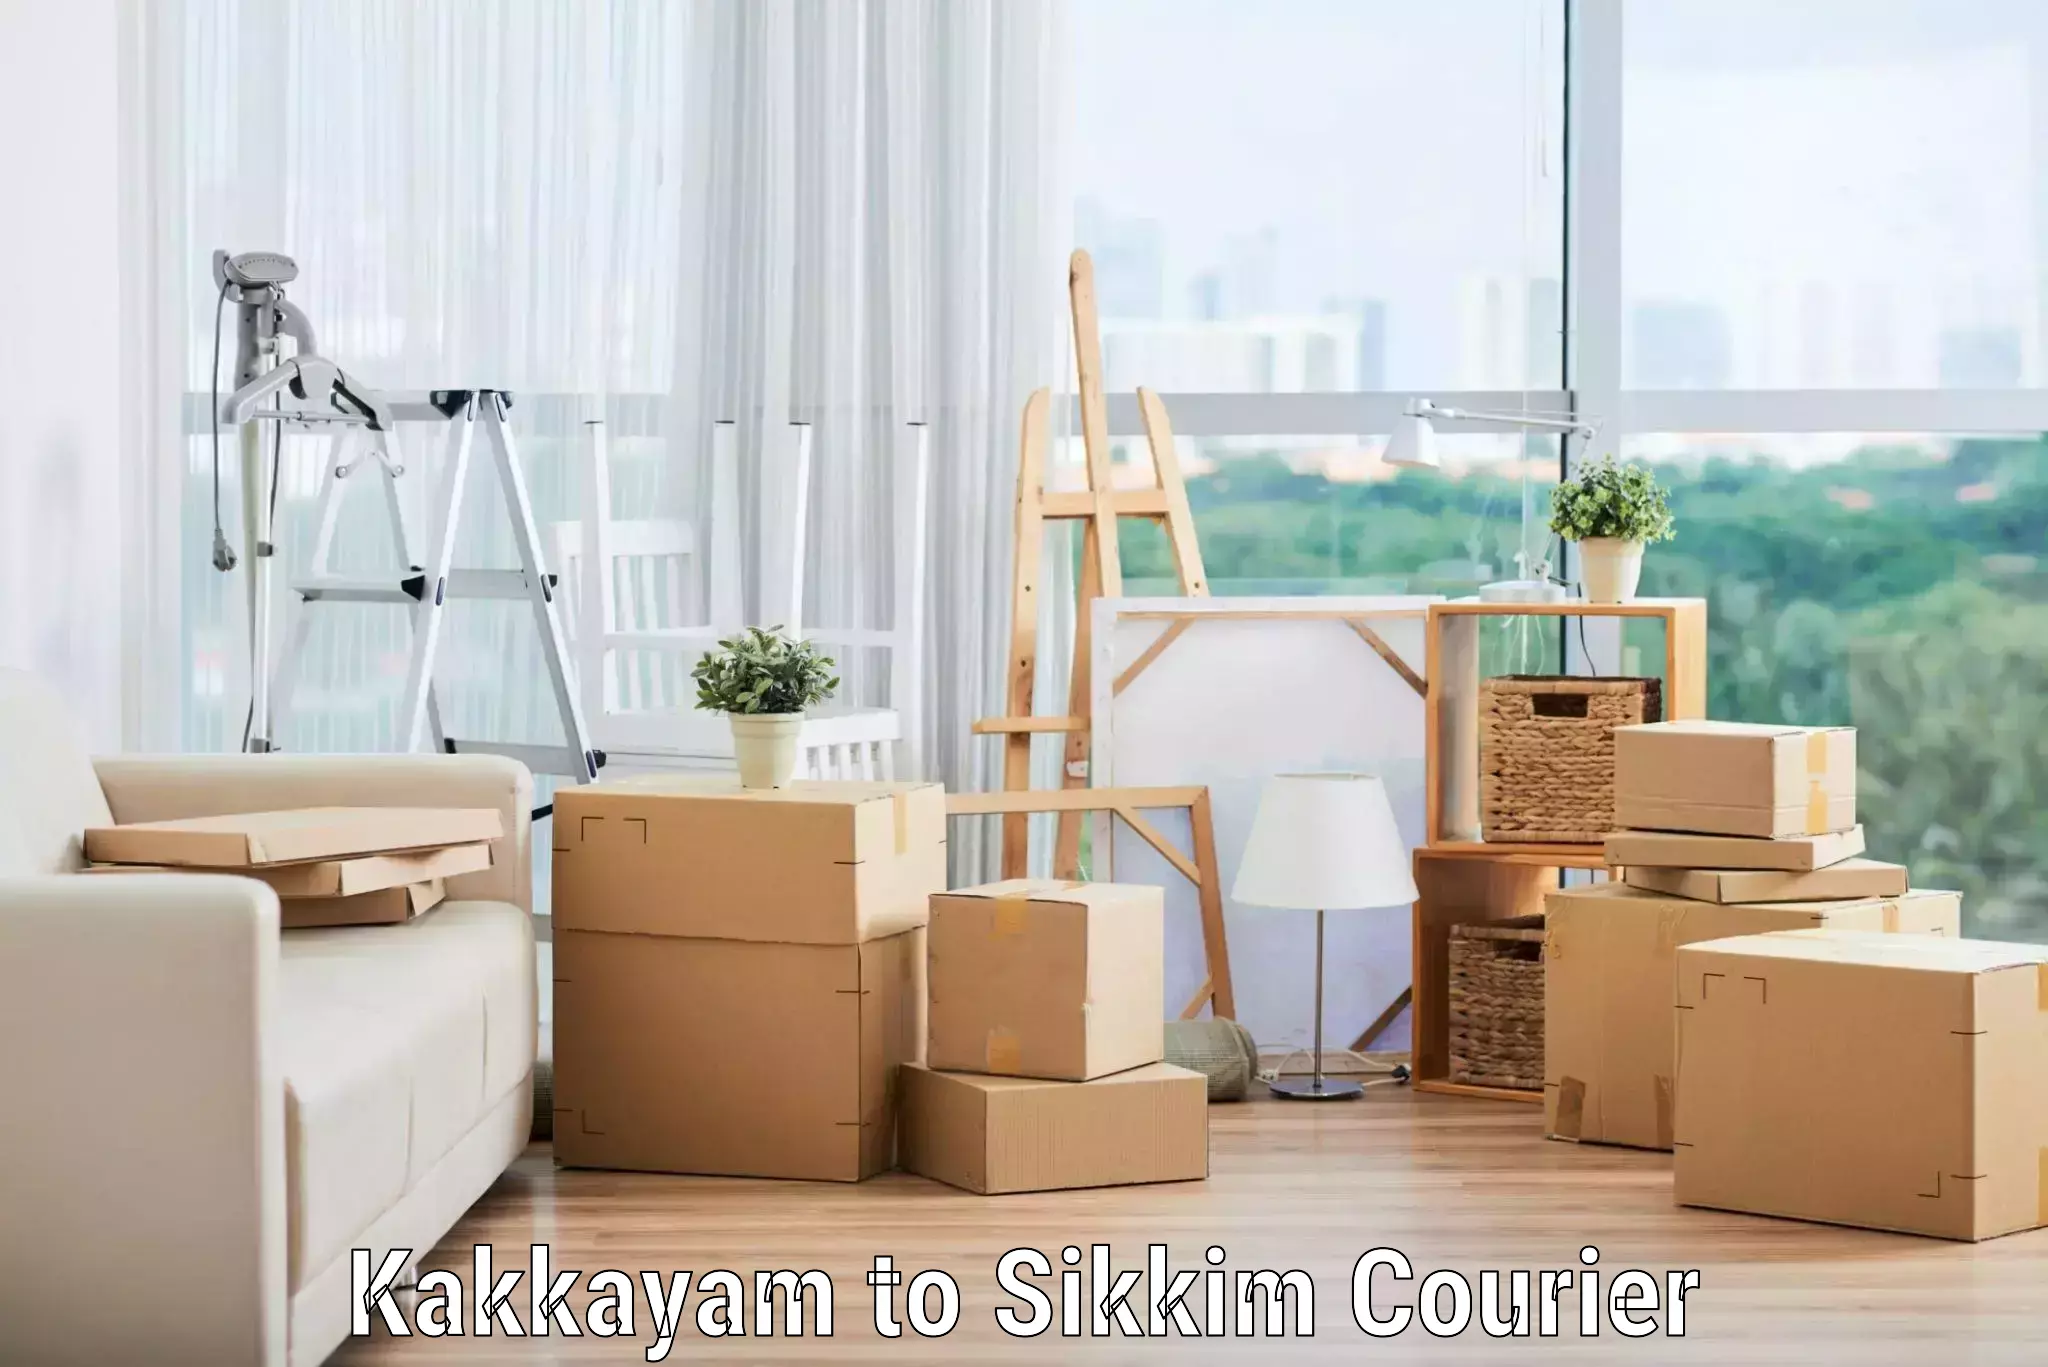 Efficient moving company Kakkayam to Sikkim